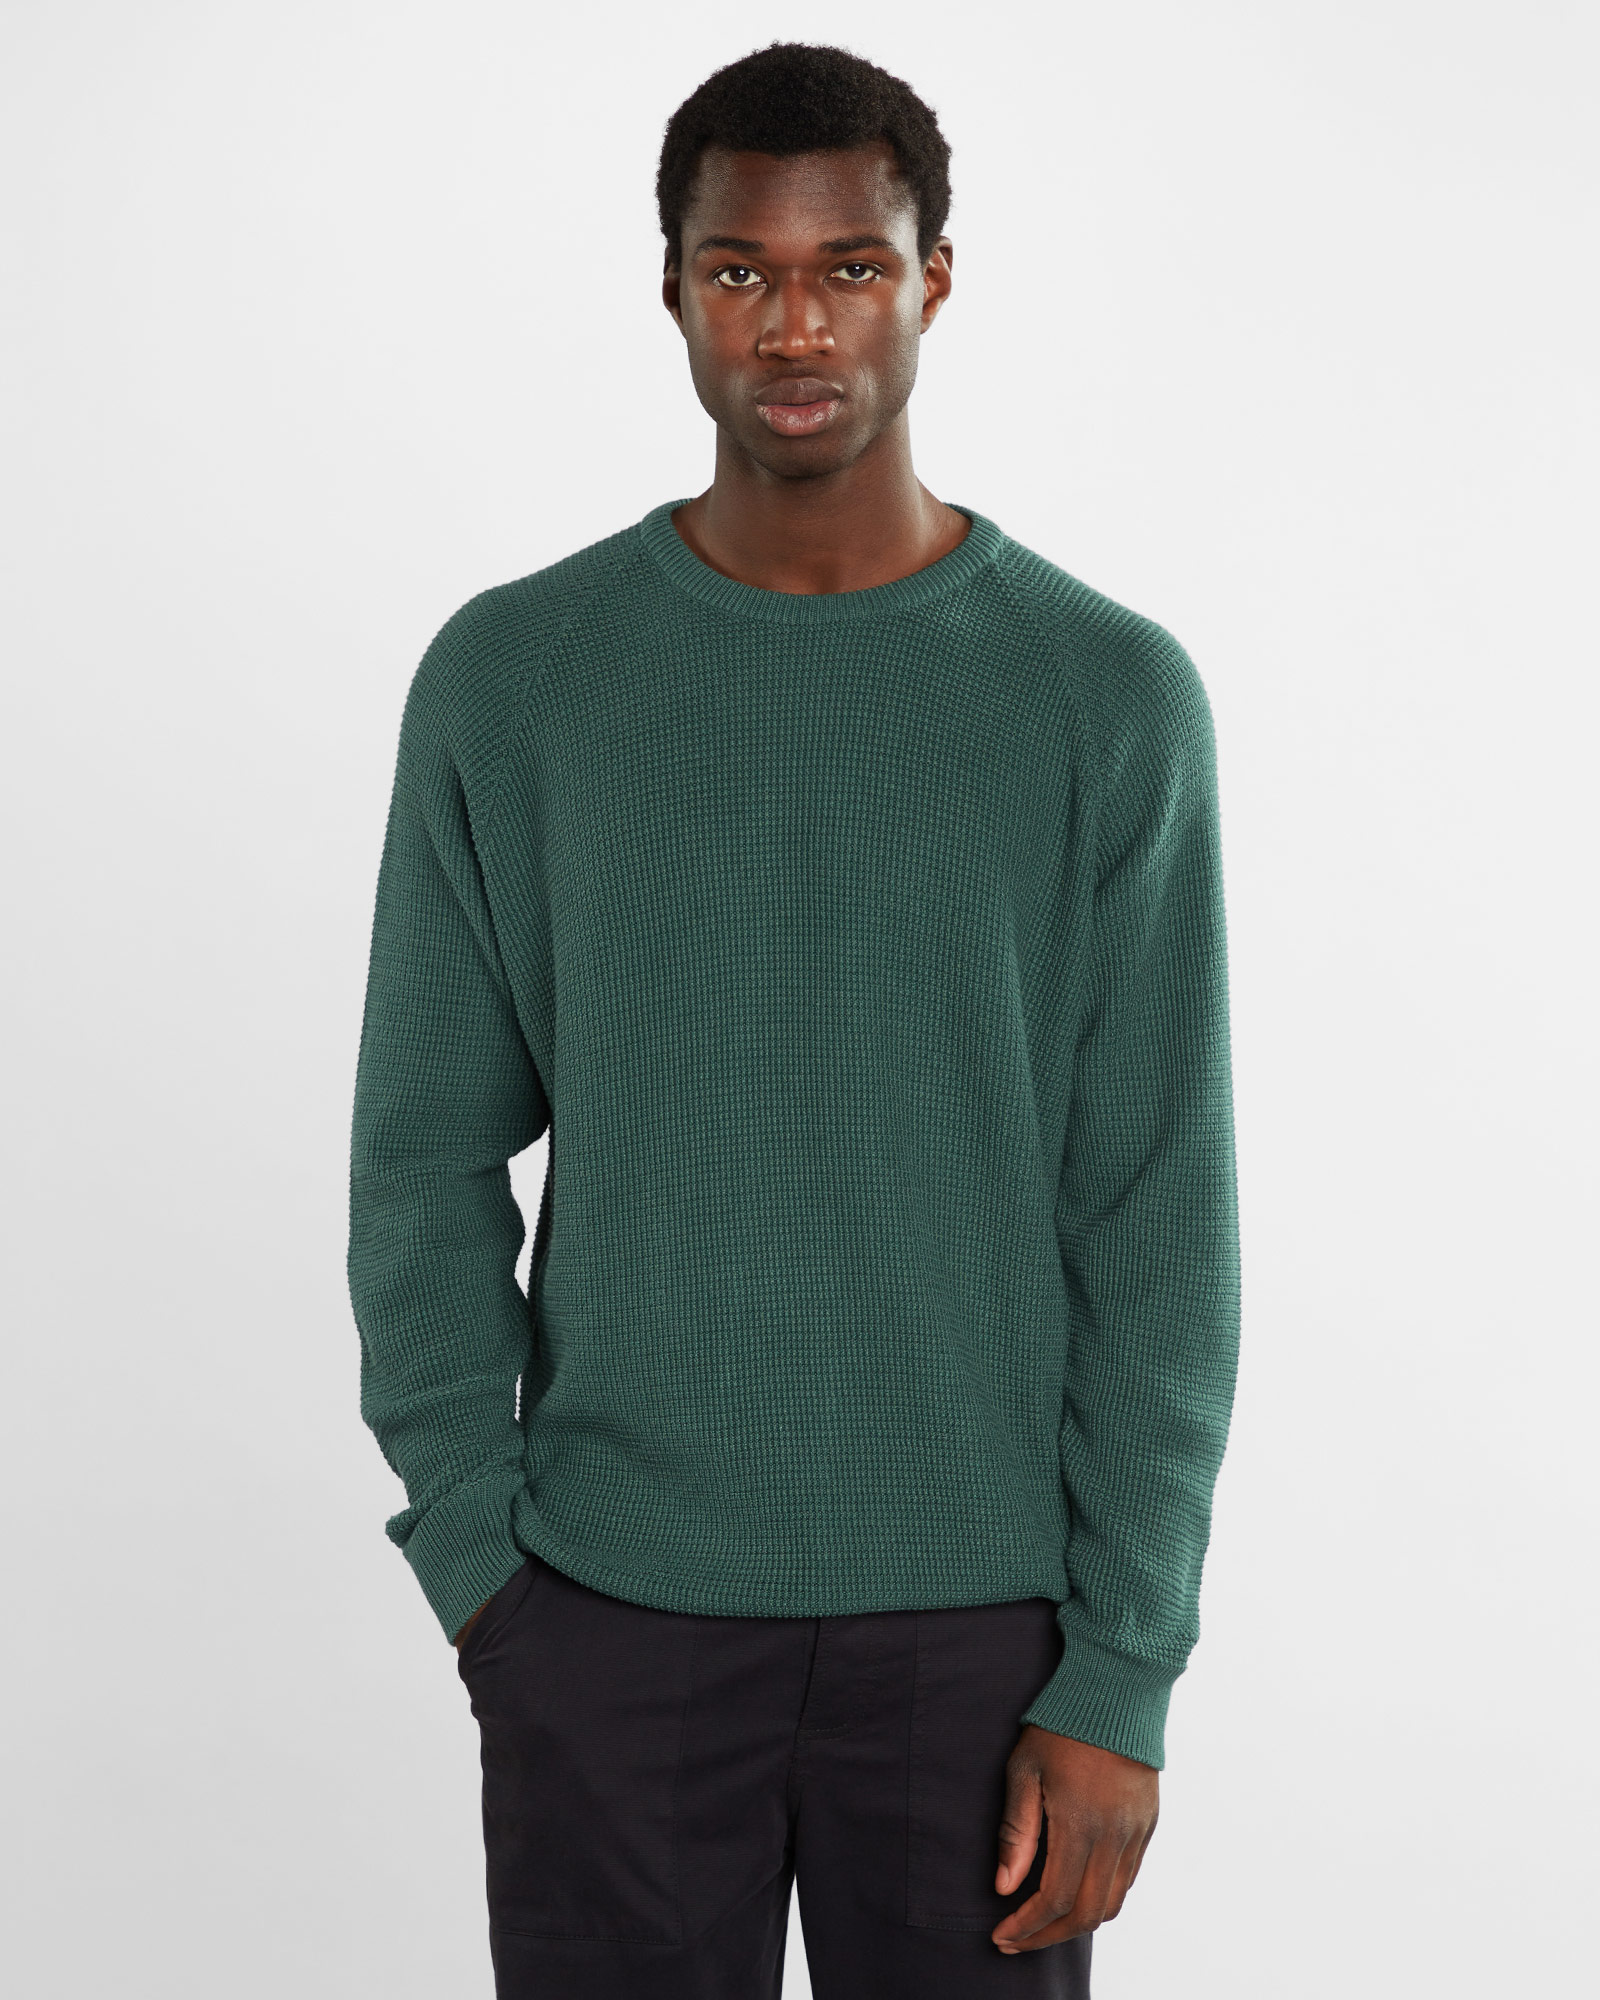 Grønn strikket genser - økologisk bomull og Tencel » Etiske & økologiske klær » Grønt Skift